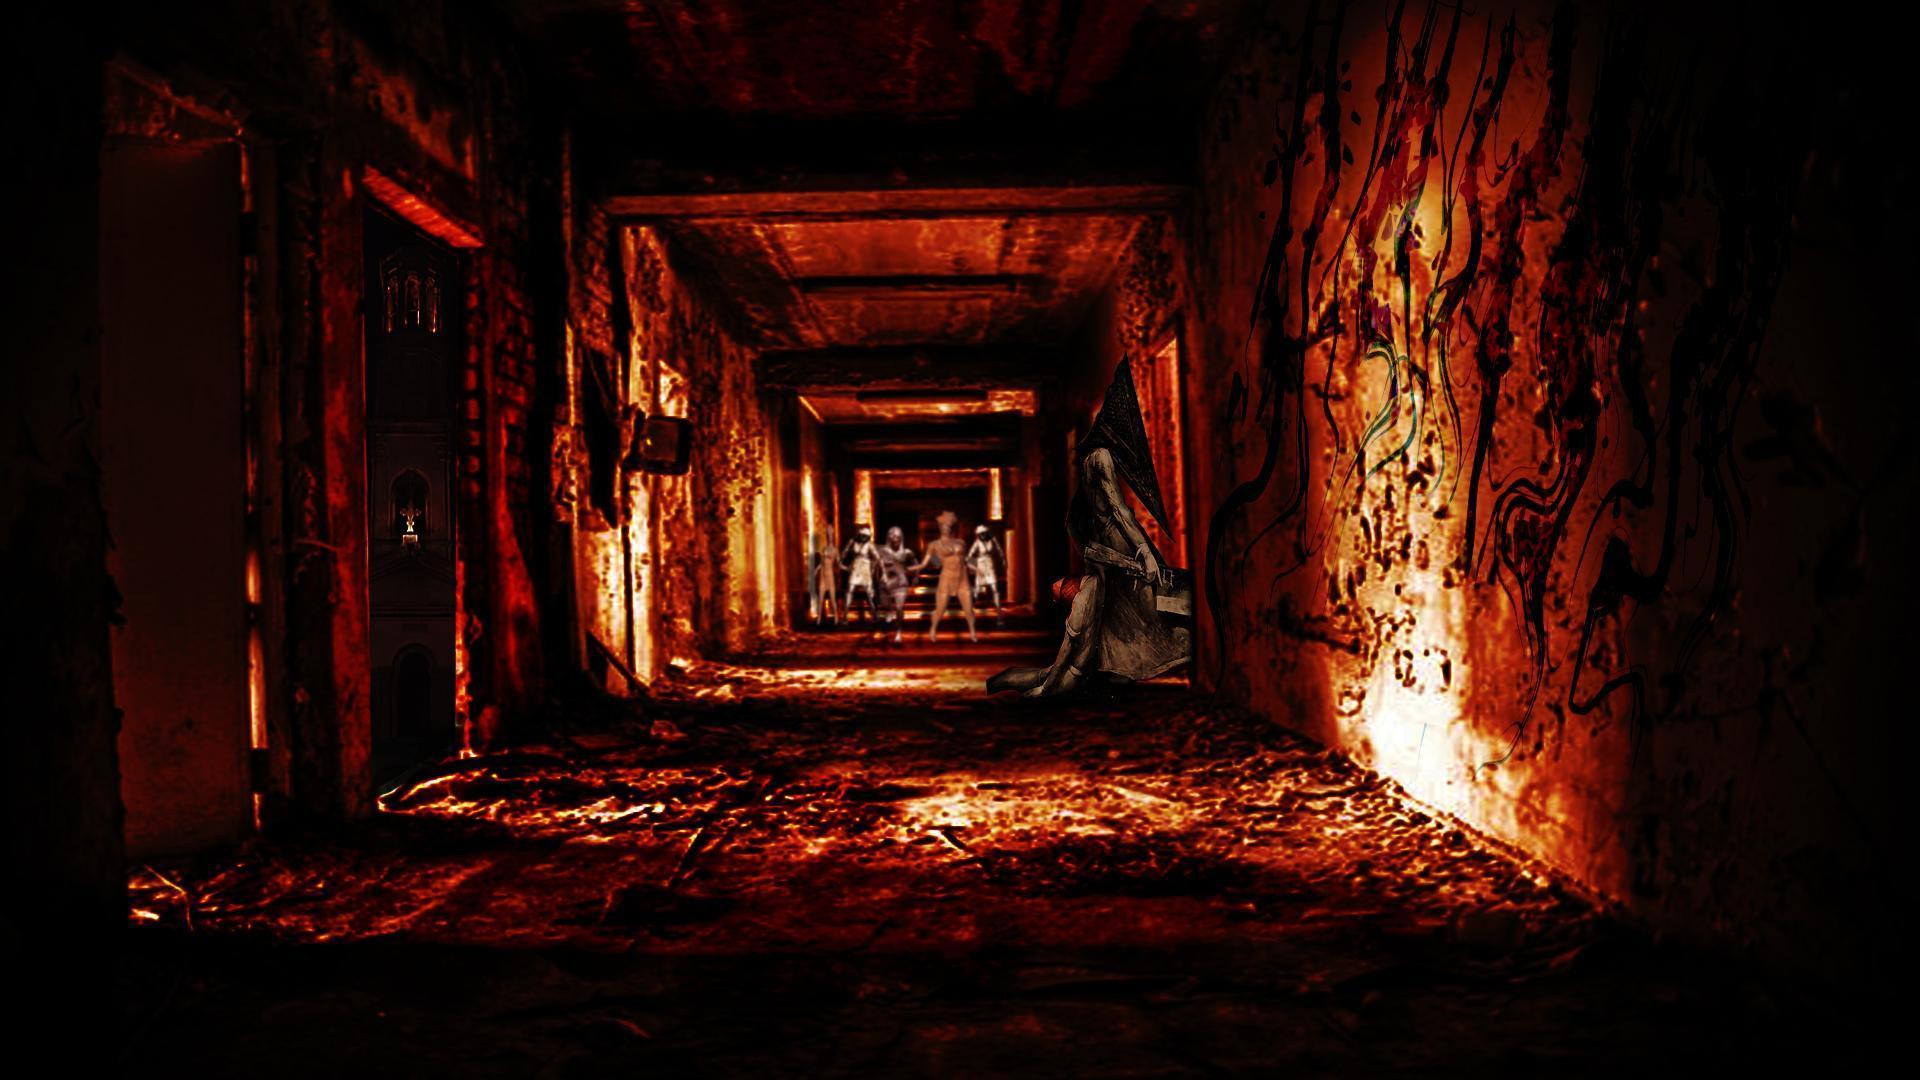 Silent Hill HD desktop wallpaper, Widescreen, High Definition